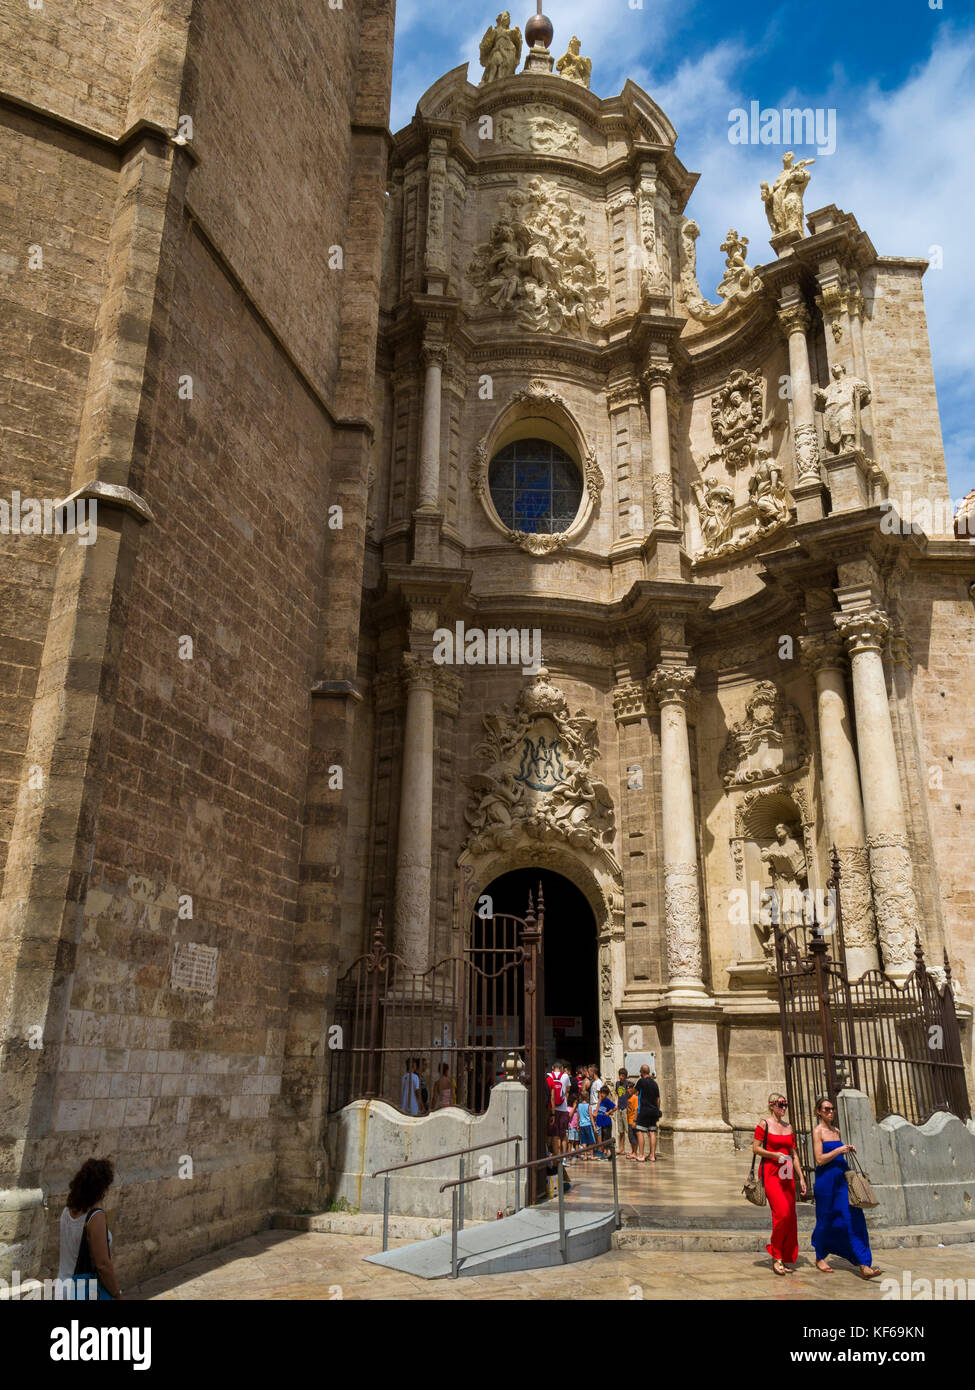 Puerta de los Hierros, the main visitors entrance to Valencia Cathedreal, Ciutat Vella, Valencia, Spain. Stock Photo